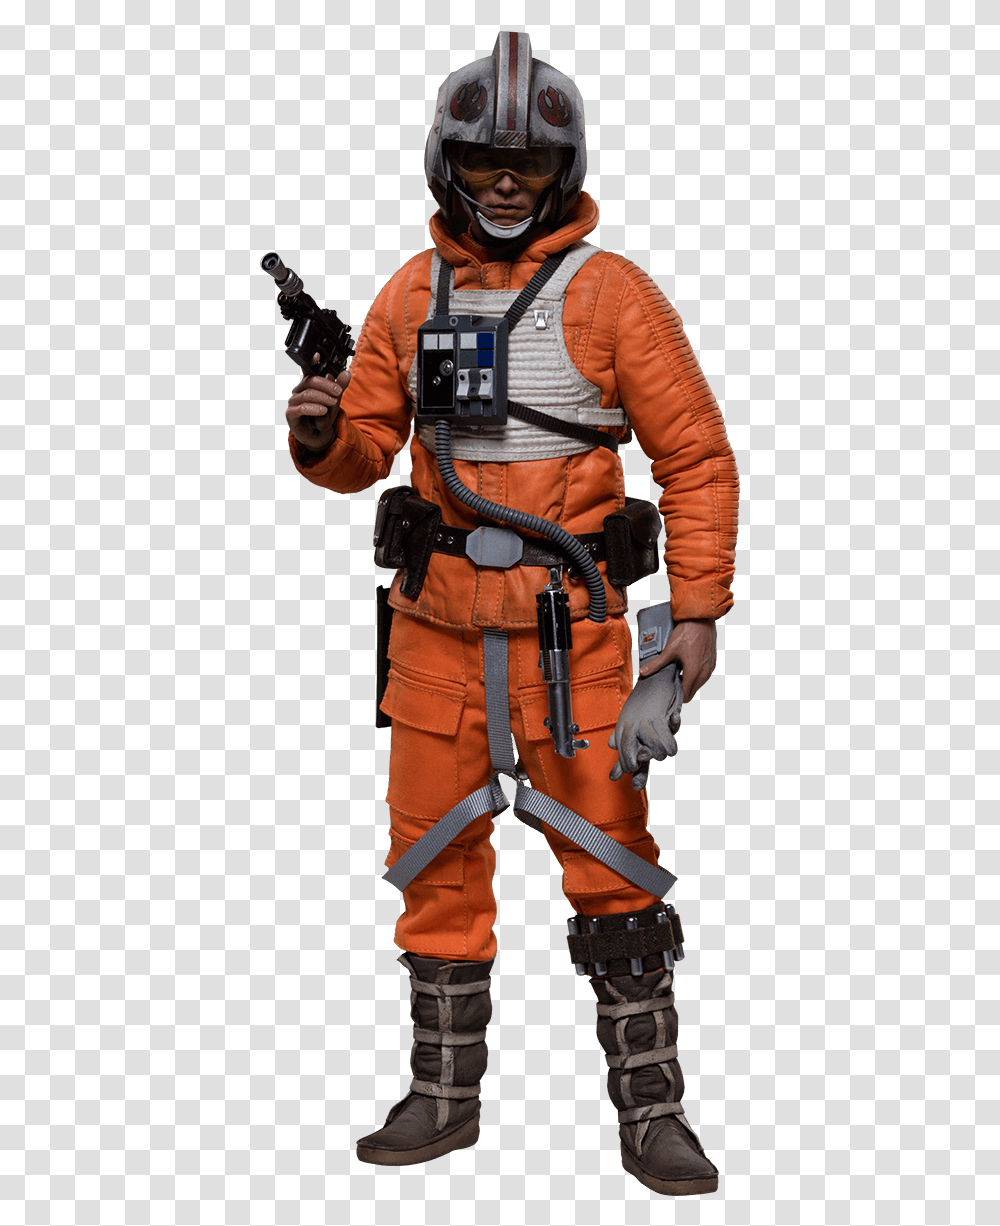 Luke Skywalker Star Wars Snowspeeder Pilot, Person, Human, Helmet, Clothing Transparent Png